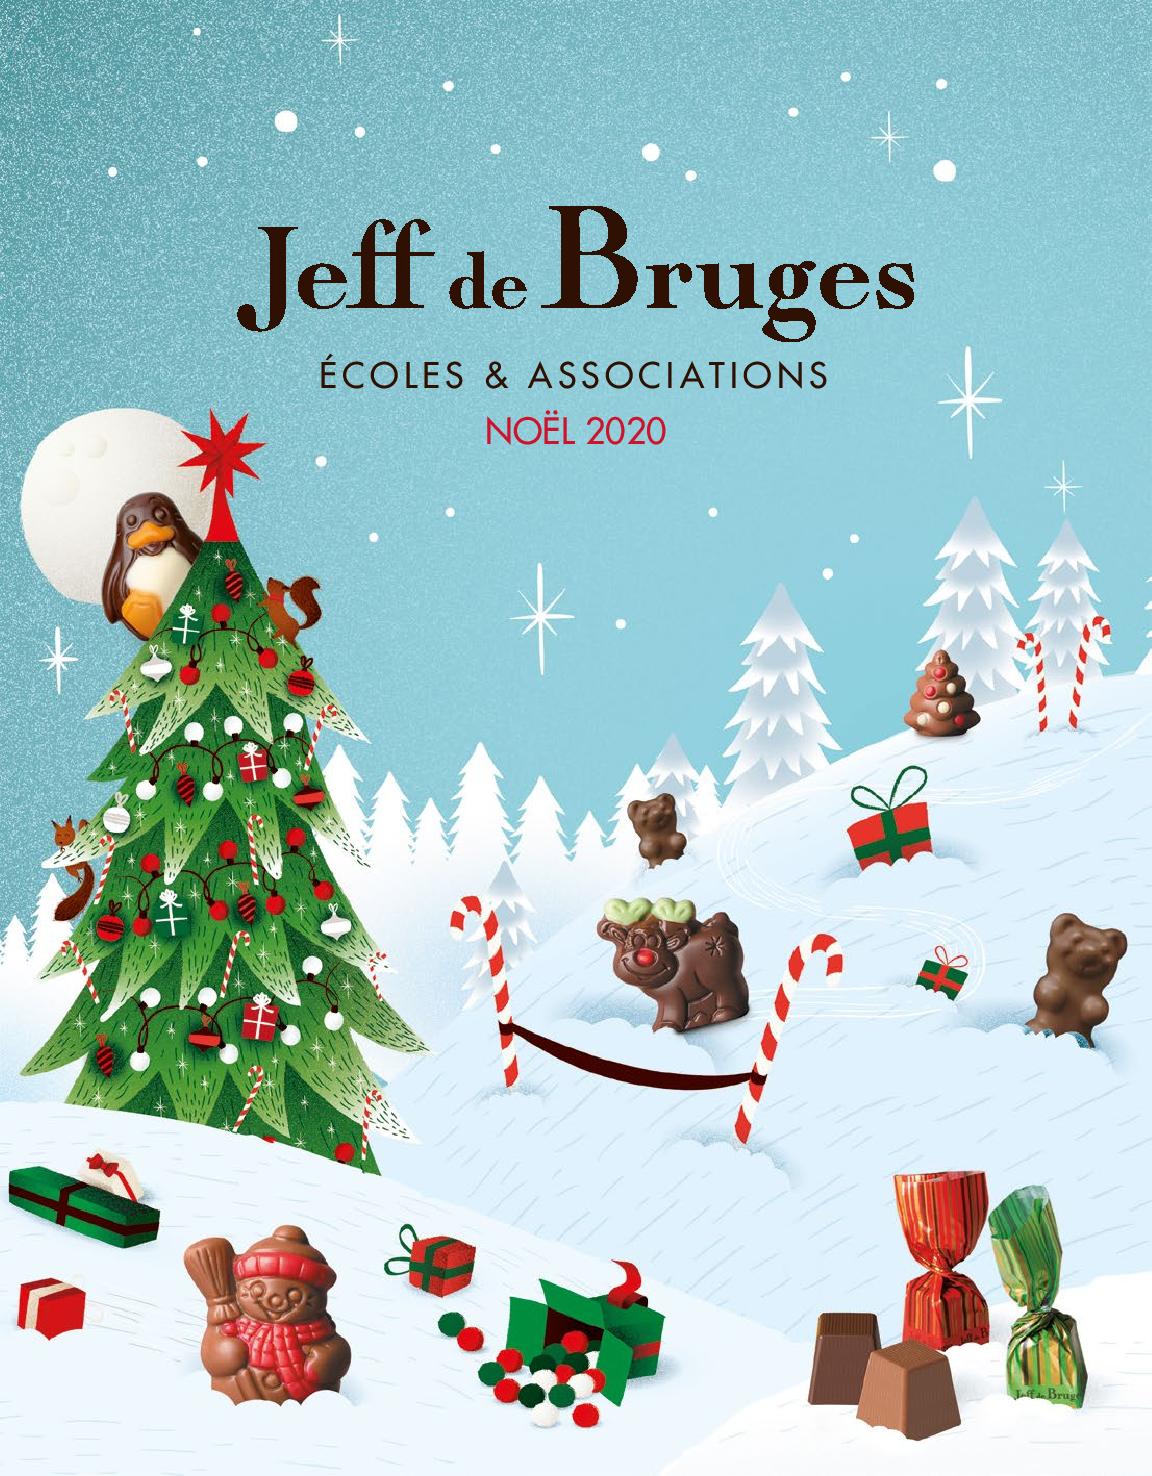 Actualité - VENTE DE CHOCOLATS DE NOEL JEFF DE BRUGES - club